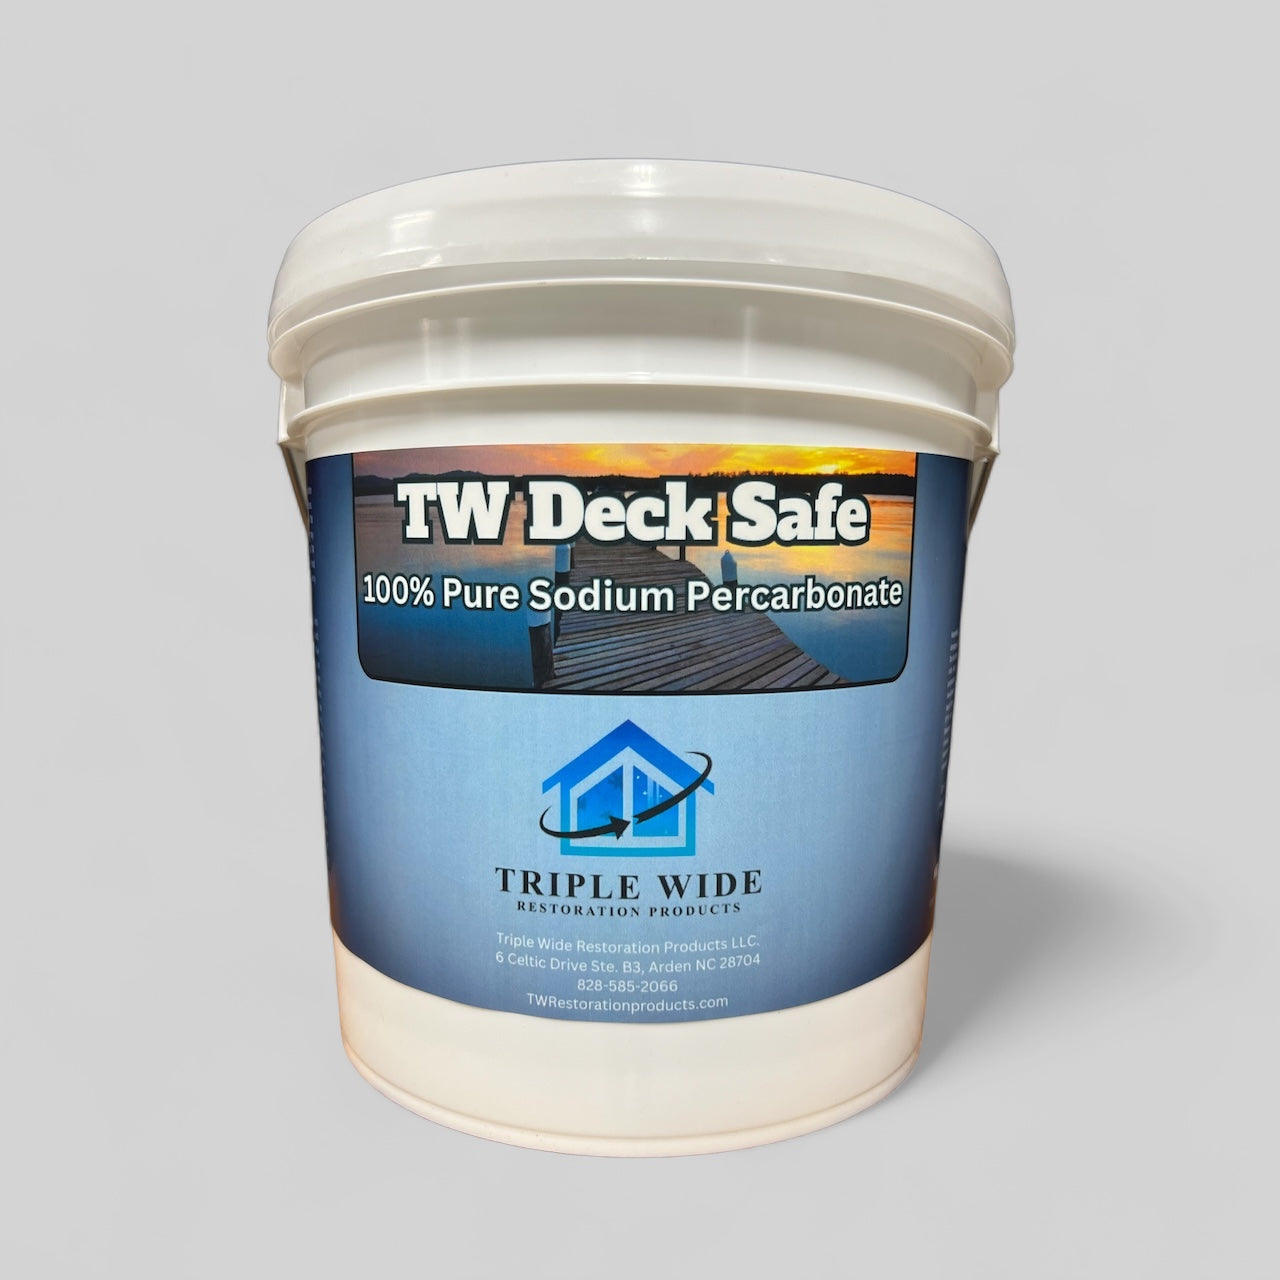 TW Deck Safe - 100% Sodium Percarbonate